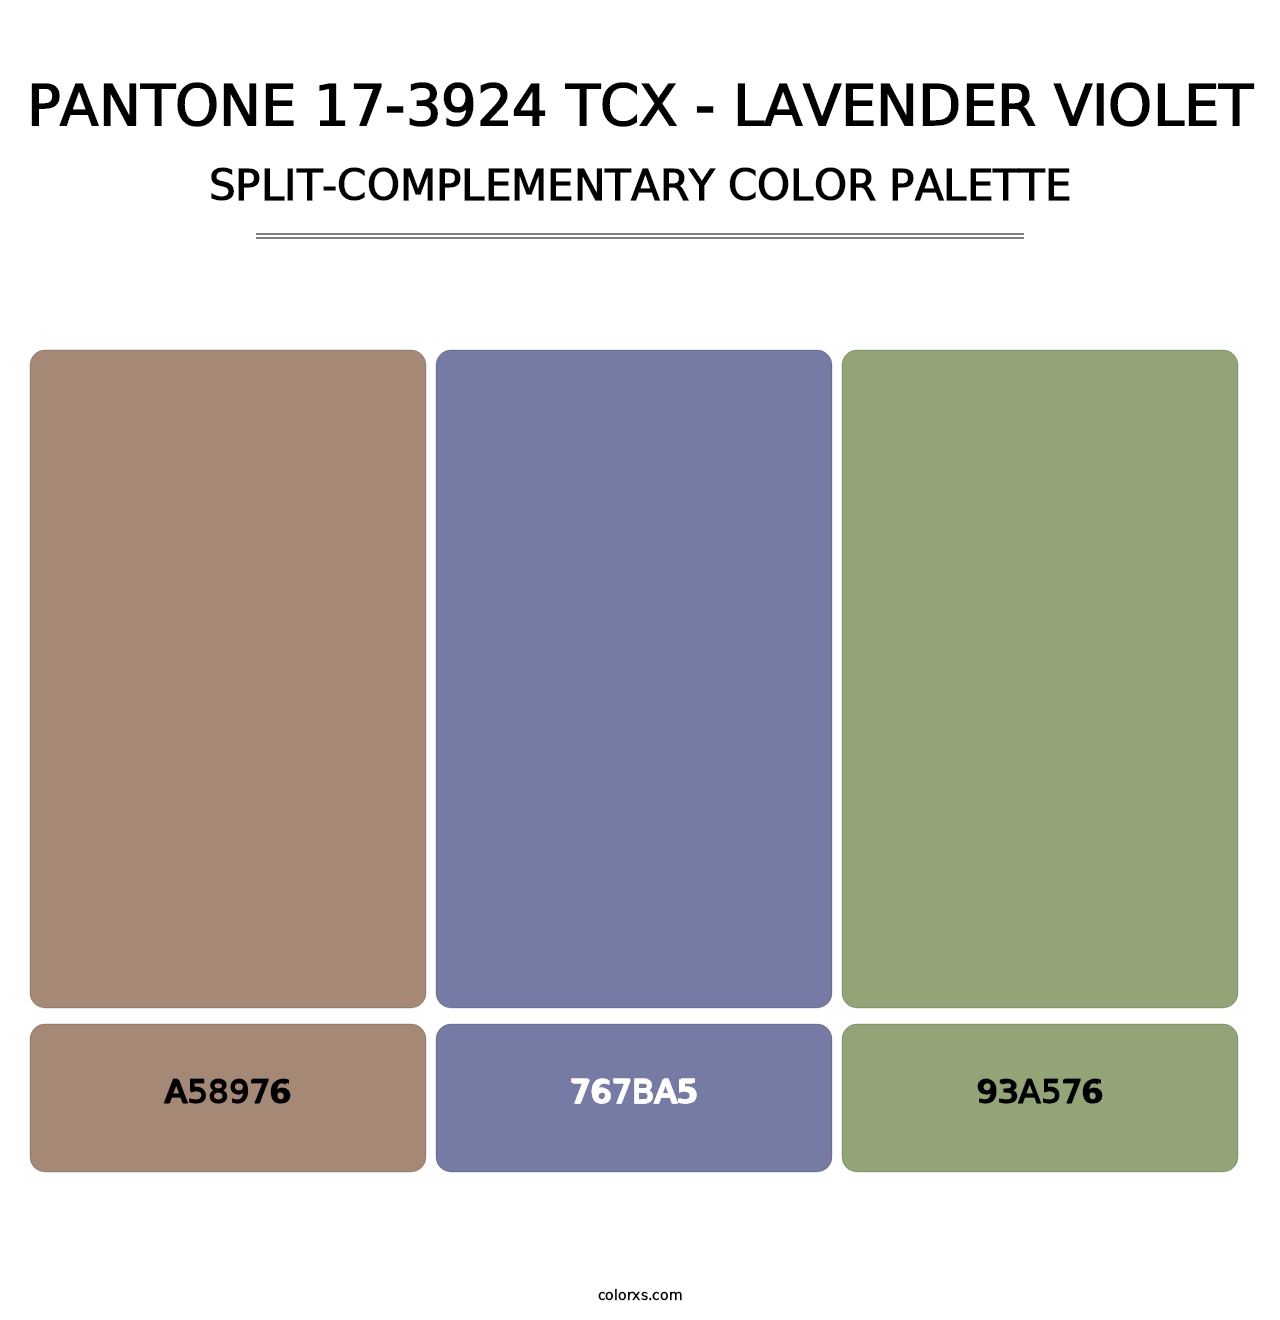 PANTONE 17-3924 TCX - Lavender Violet - Split-Complementary Color Palette